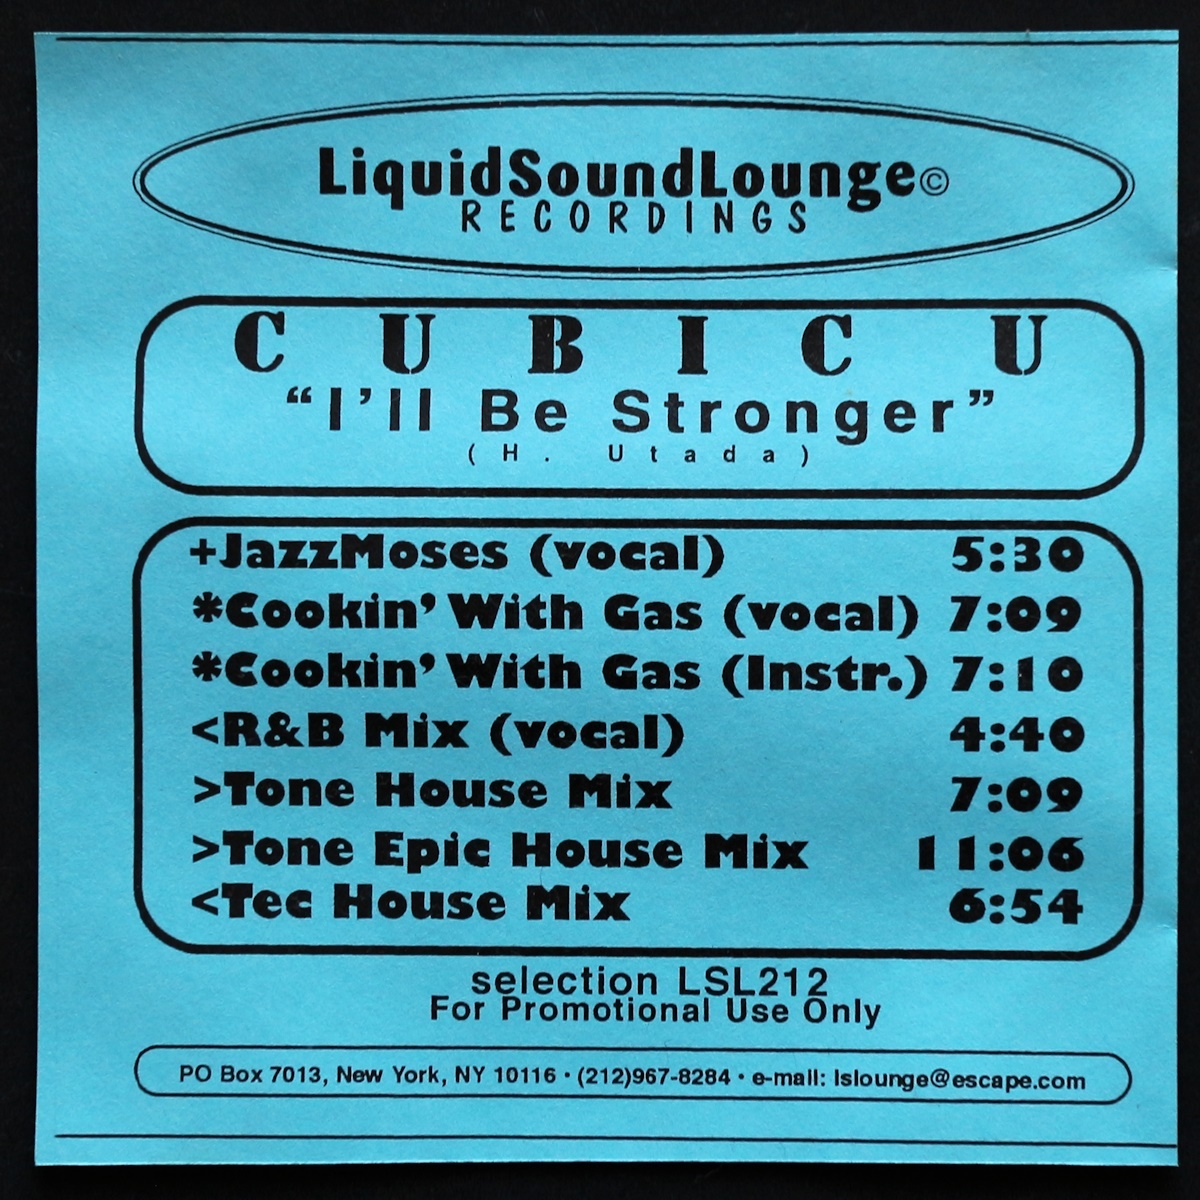 CD/Cubic U/I'll Be Stronger/Liquid Sound Lounge/Hikaru Utada/宇多田ヒカル_表紙に軽い波打ちがあります